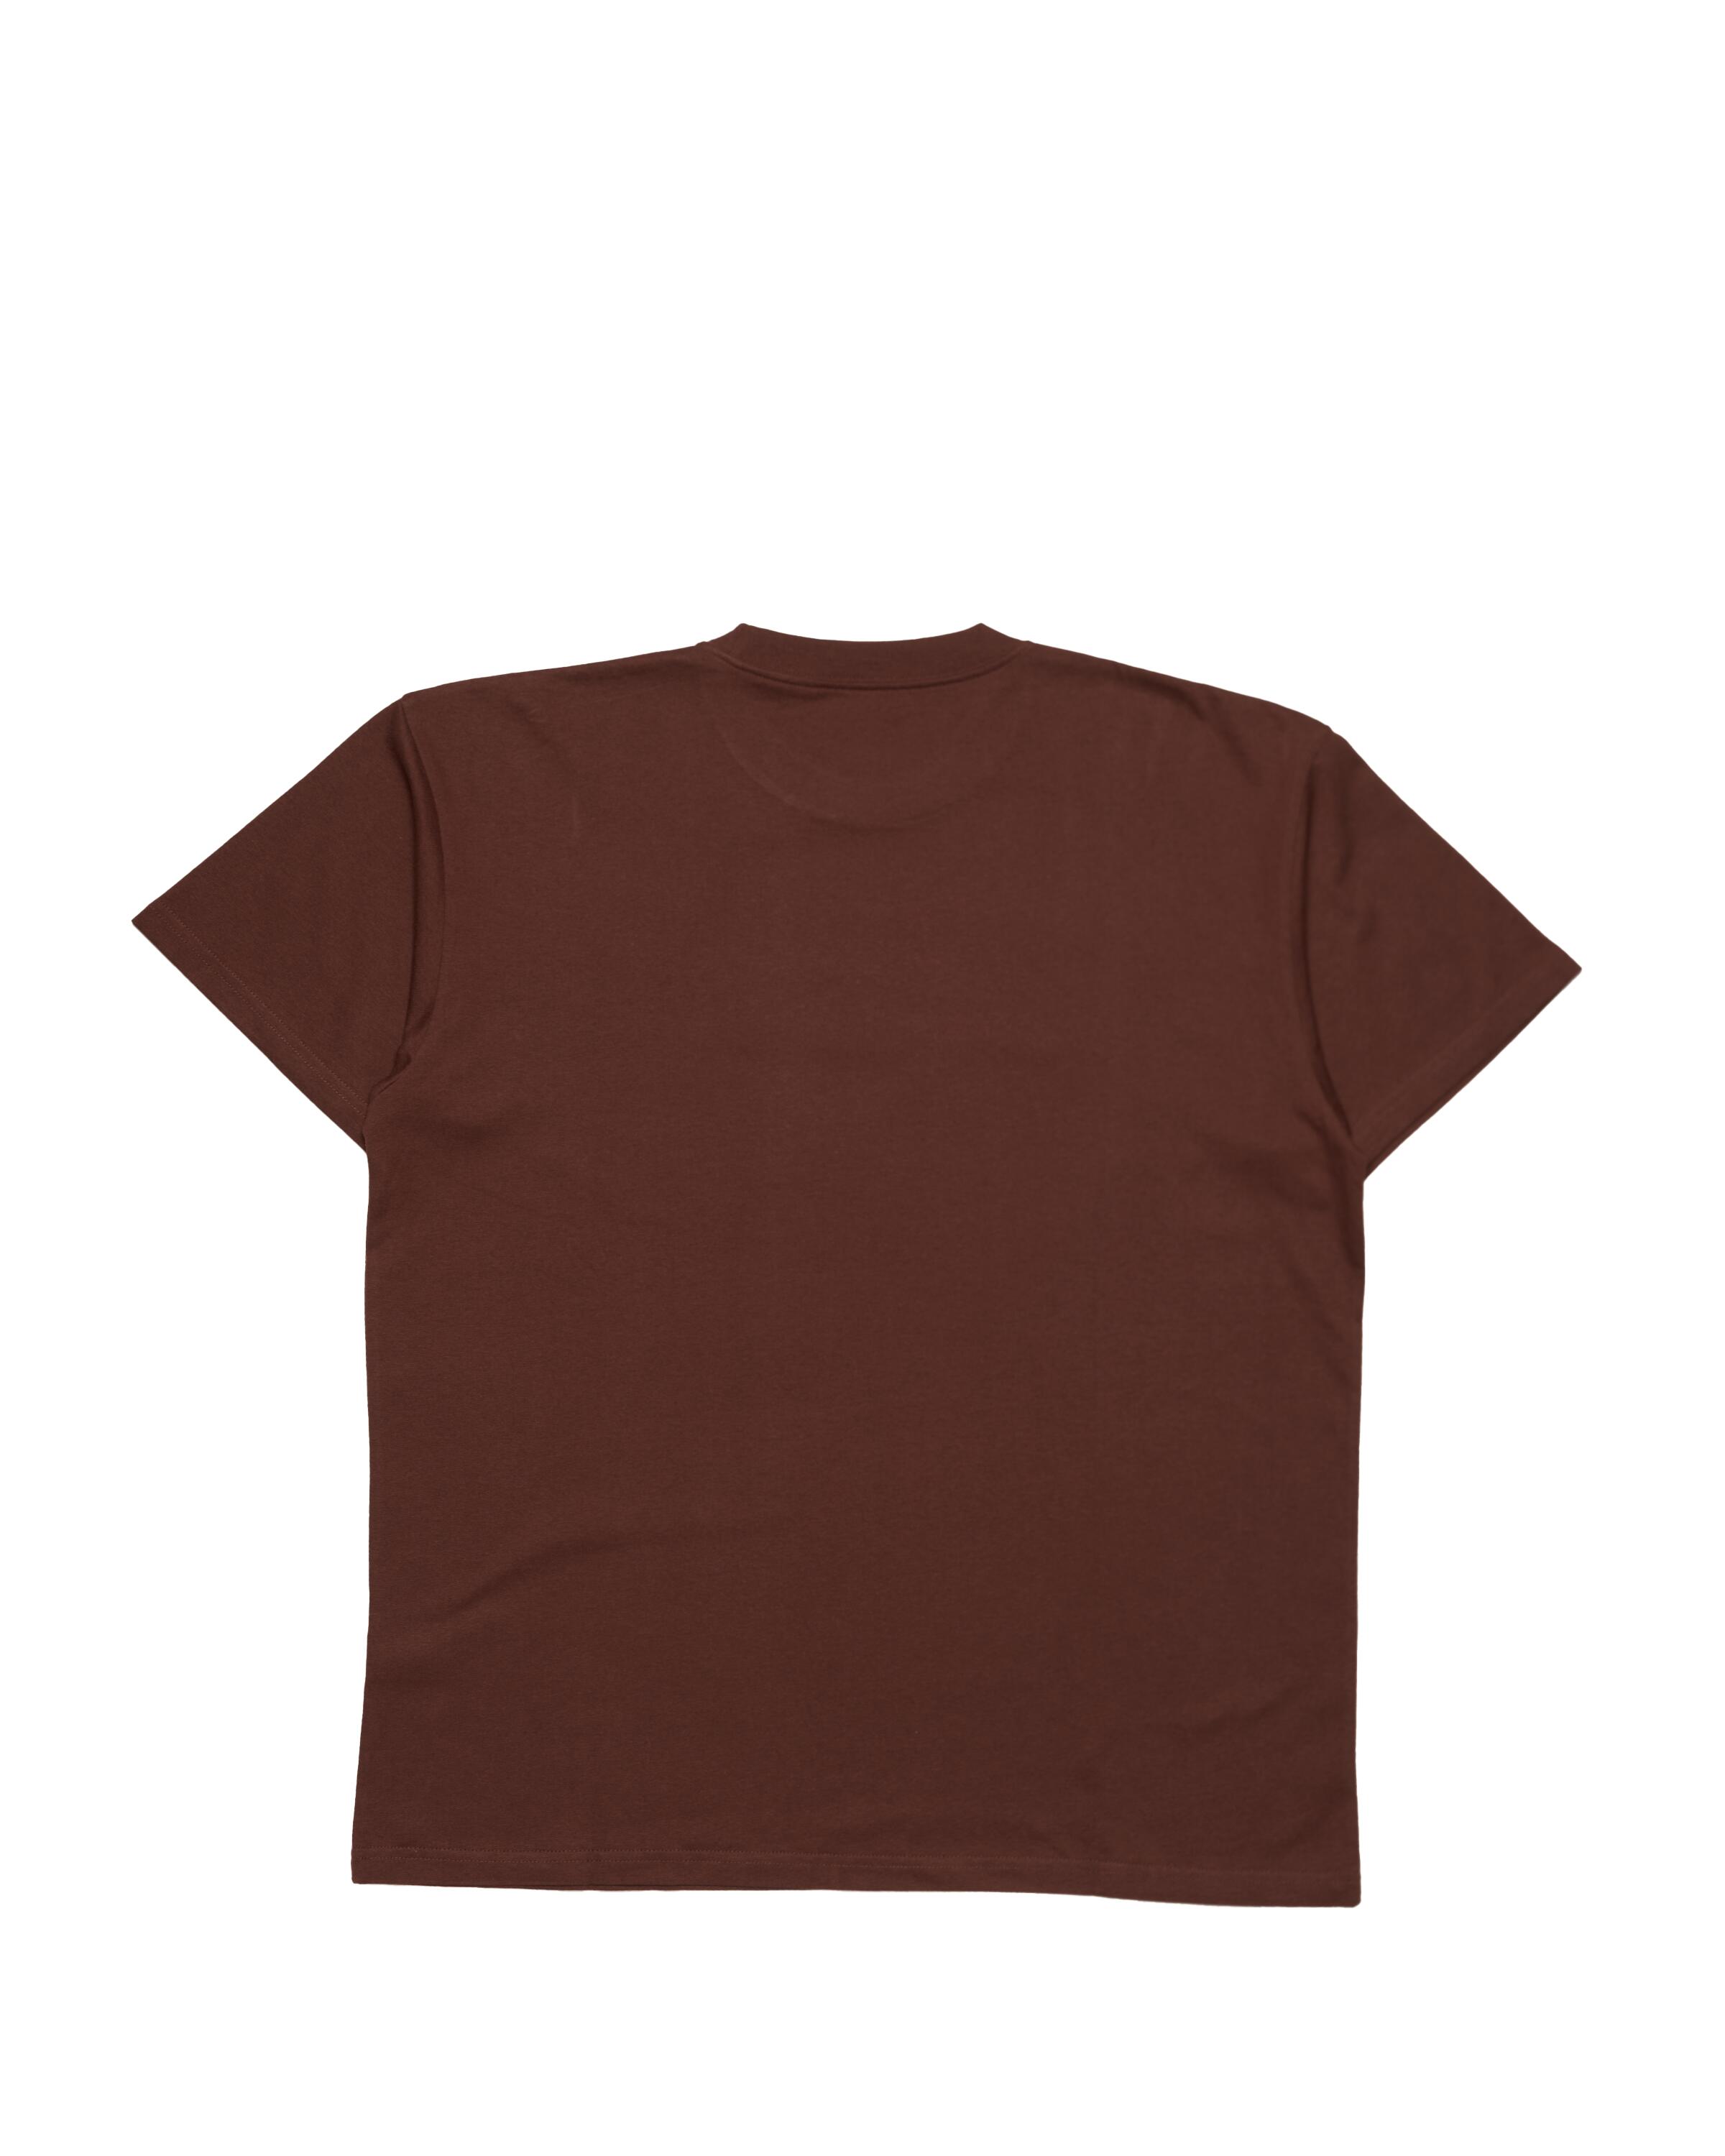 Carhartt WIP S/S Duck Pond T-Shirt